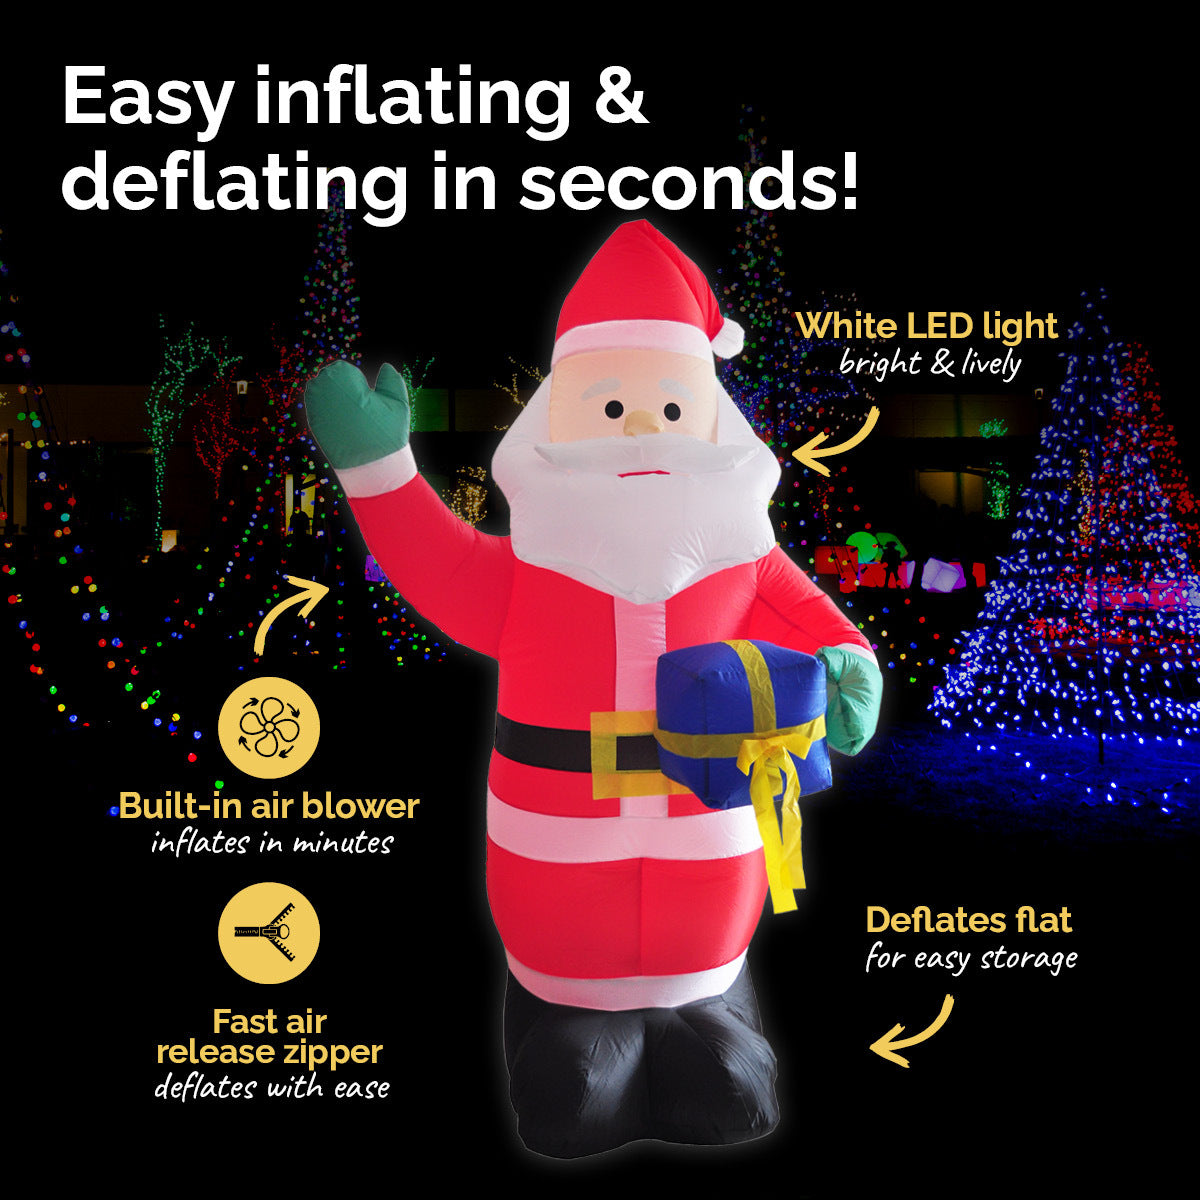 Christmas By Sas 1.8m Self Inflatable LED Waving Santa & Gift Box